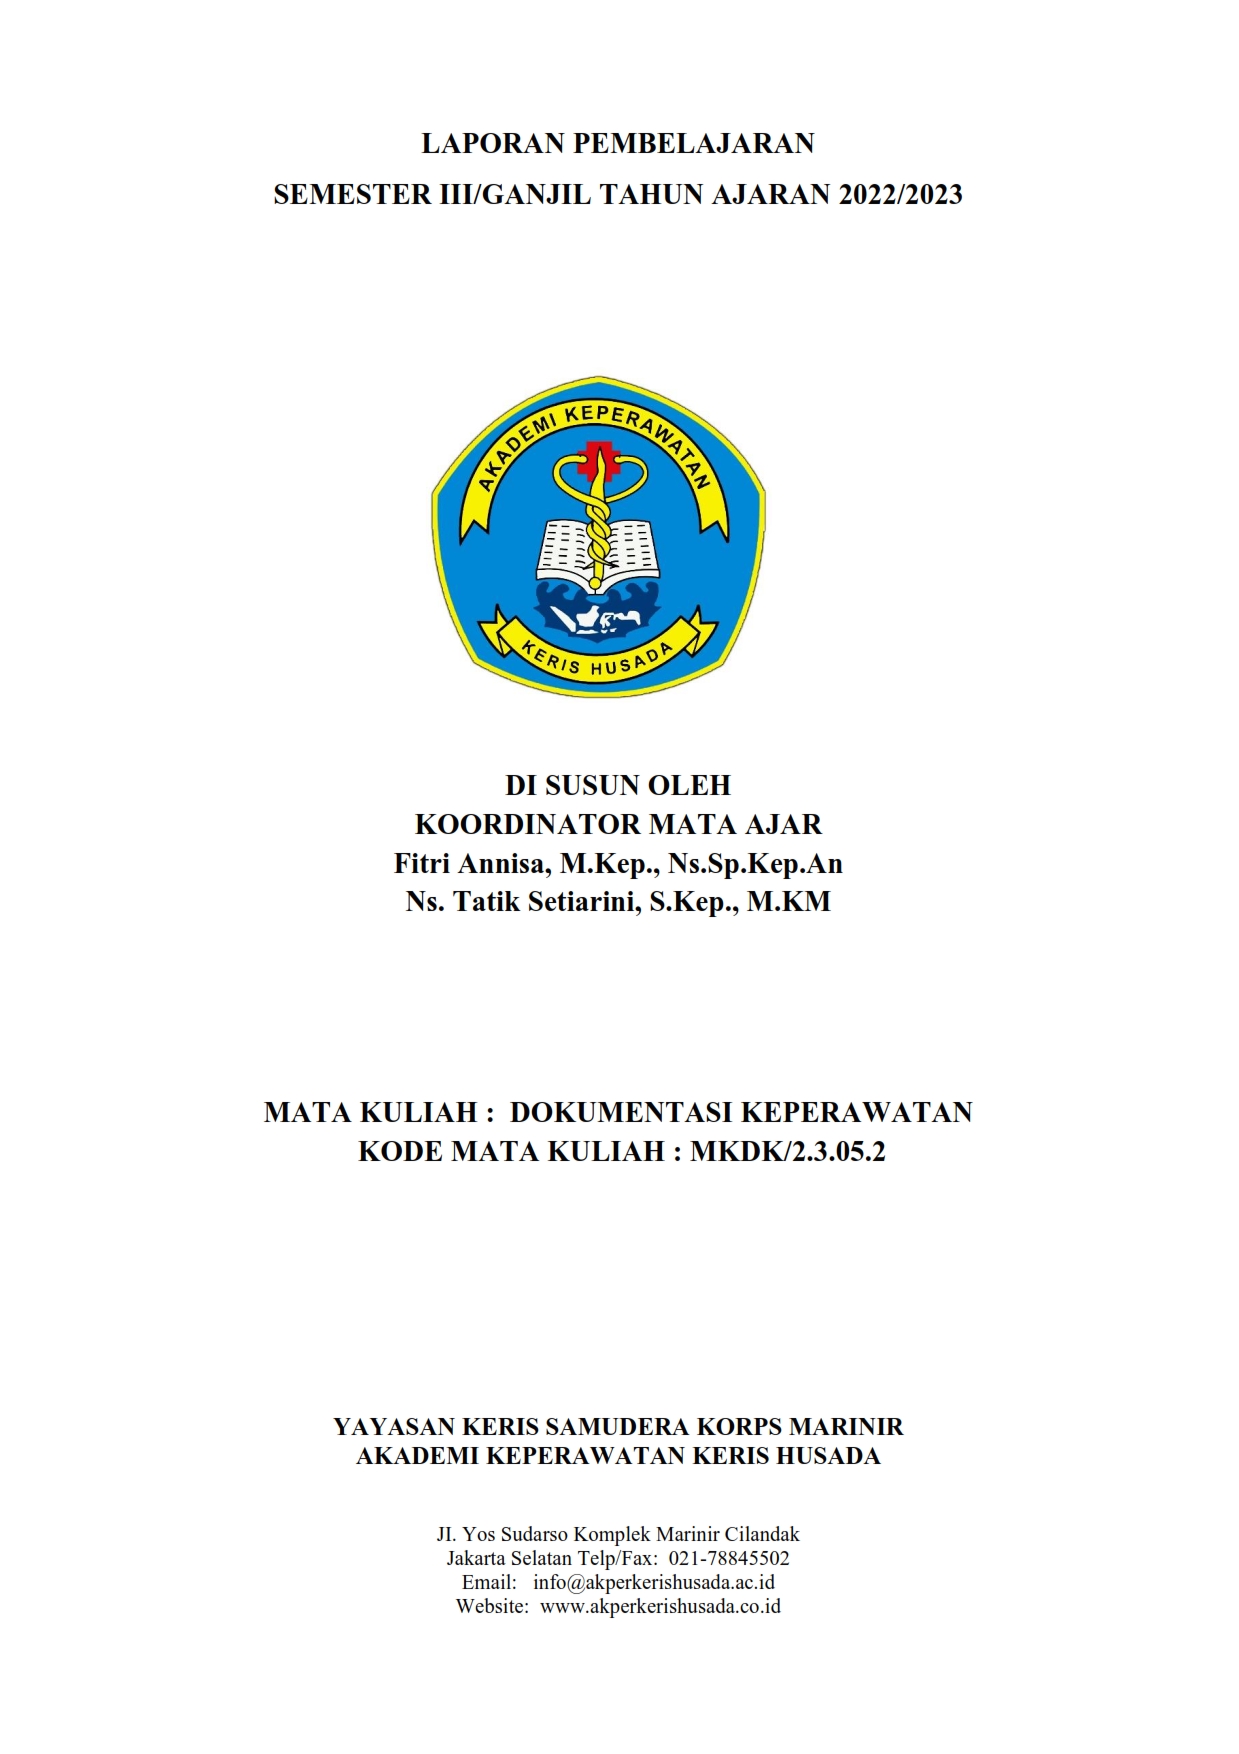 Jurnal Perkuliahan MK. Dokumentasi Keperawatan Semester Ganjil III TA.2022/2023